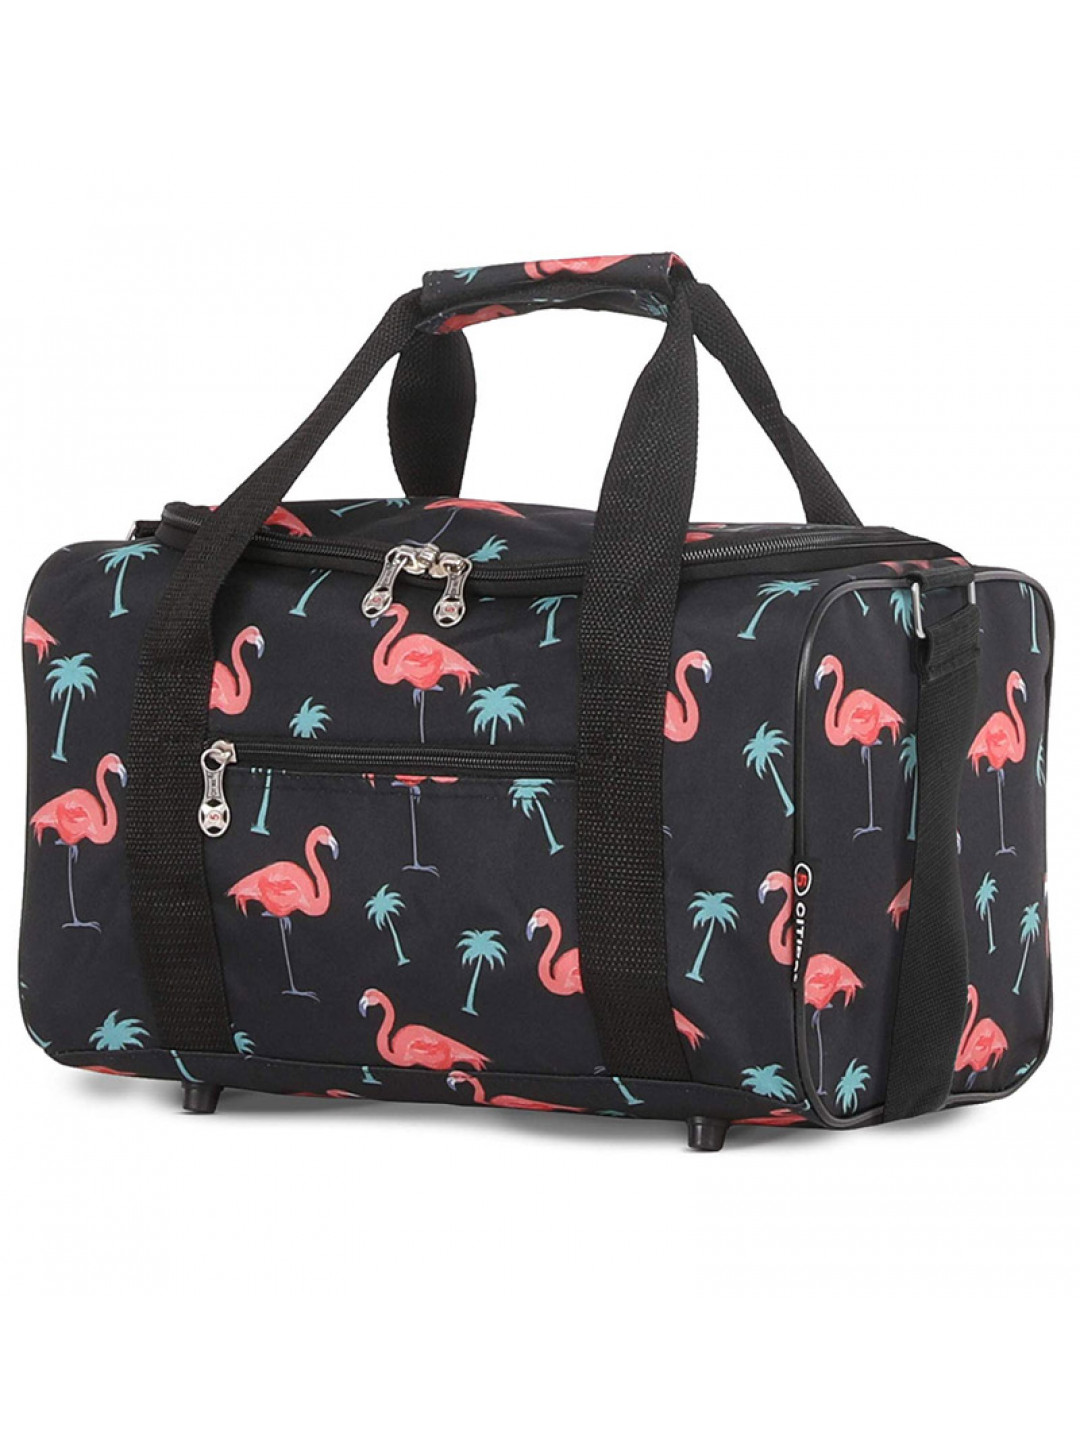 Ostatní značky Dámská cestovní taška CITIES 611 Flamingo